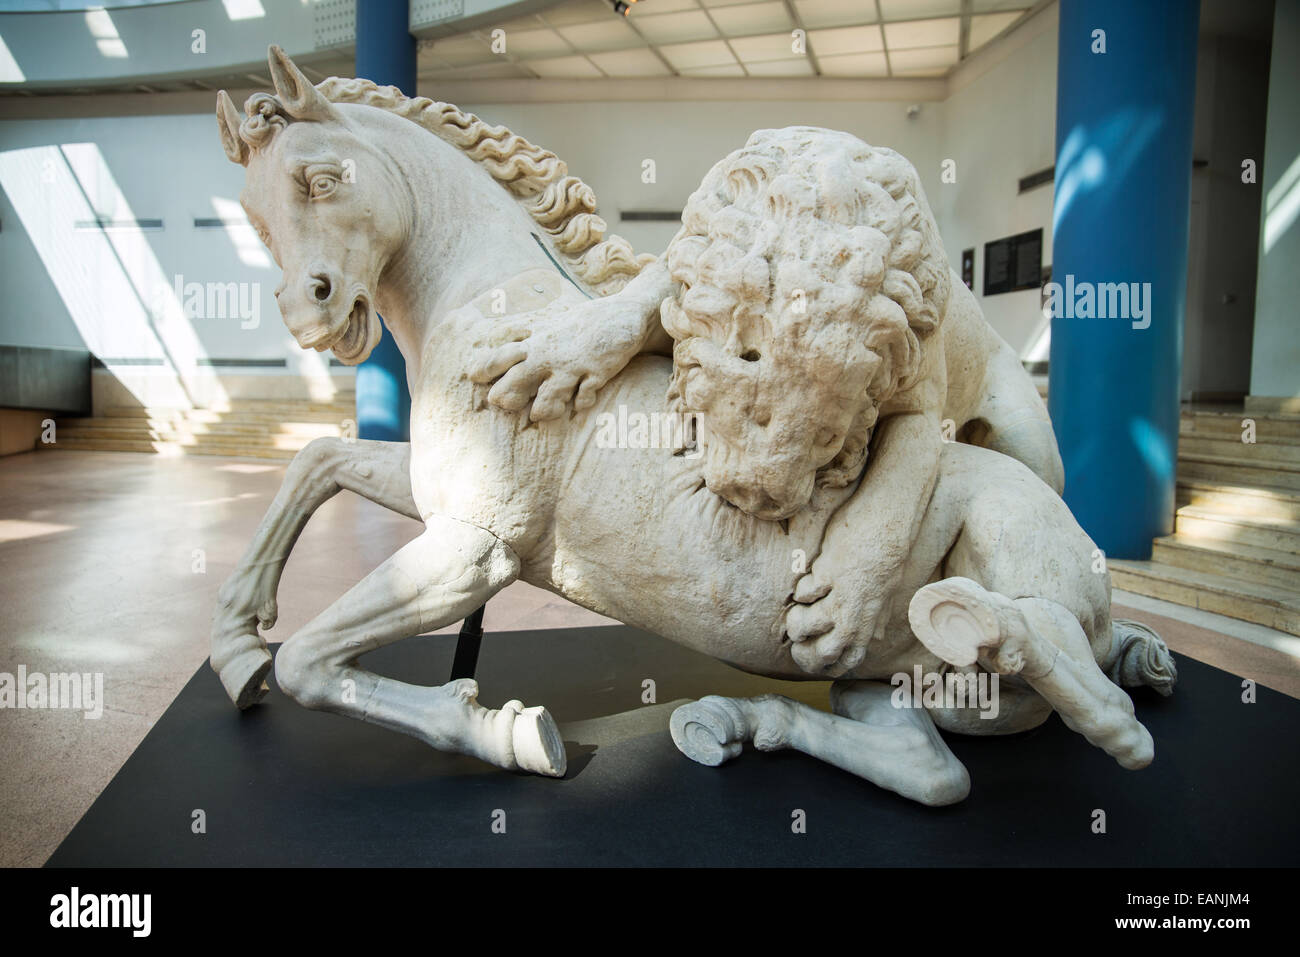 Leone che azzanna il cavallo, Palazzo dei Conservatori, Capitoline Museums, Rome, Italy Stock Photo